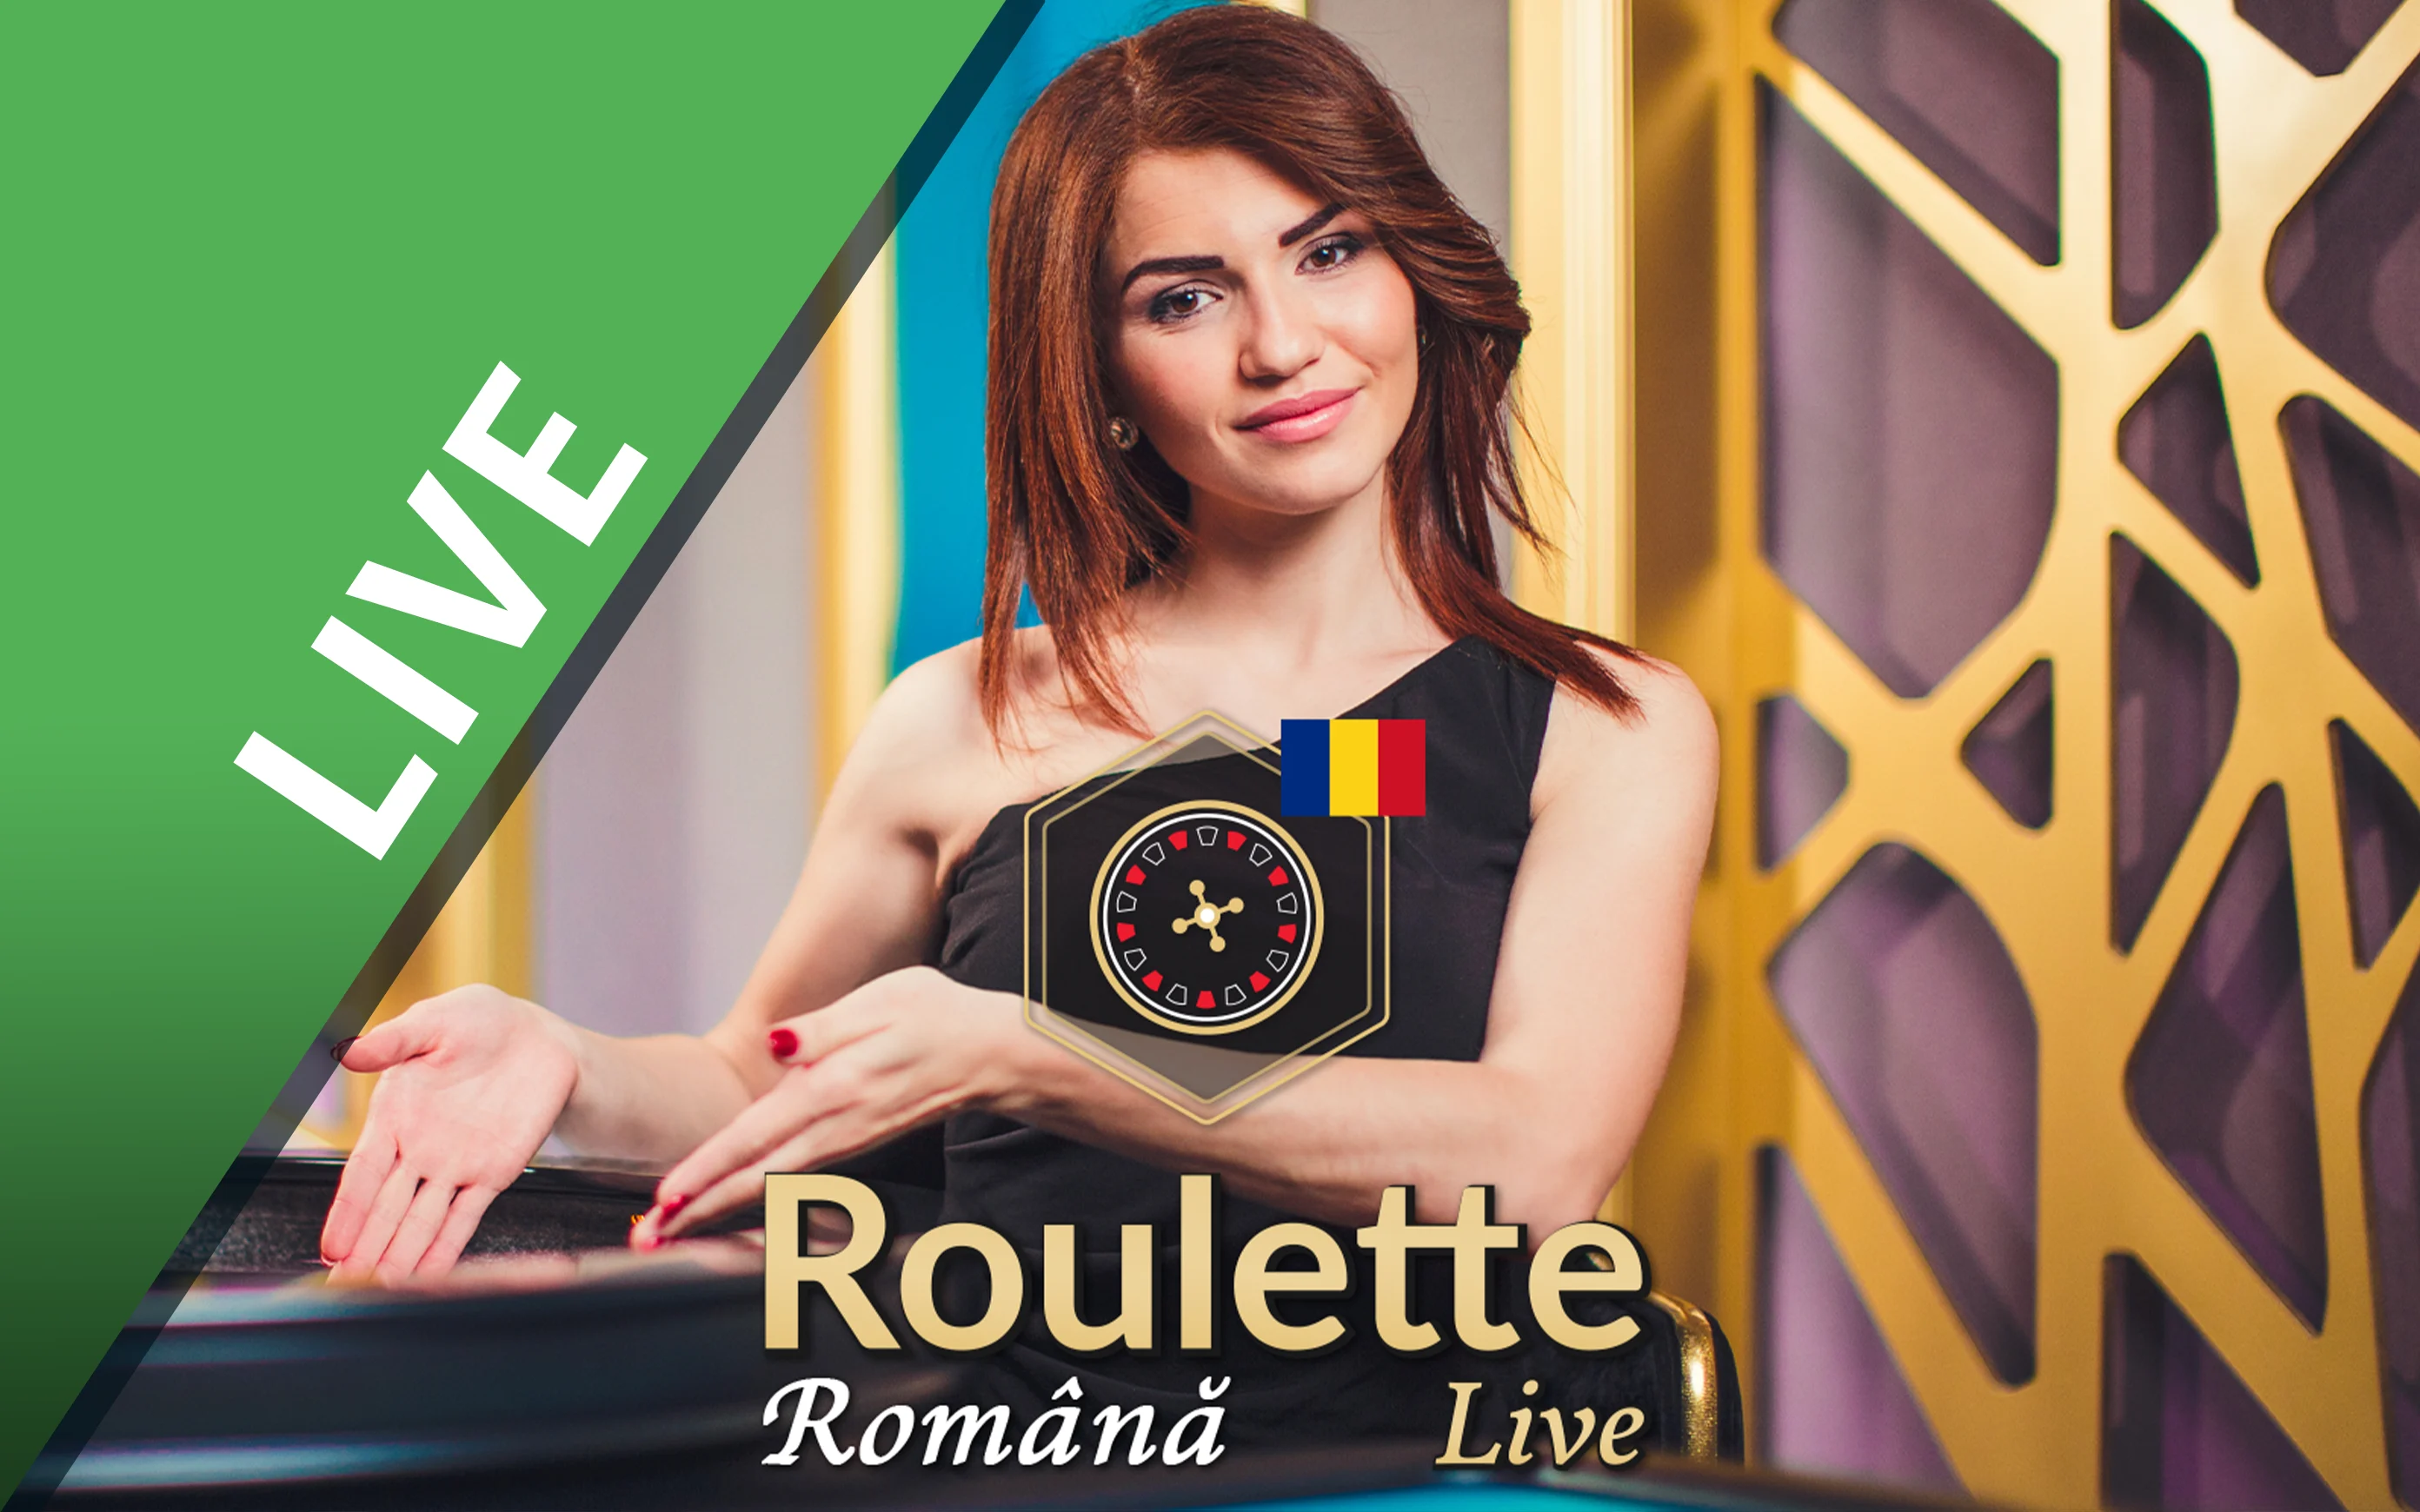 Chơi Bucharest Roulette trên sòng bạc trực tuyến Starcasino.be